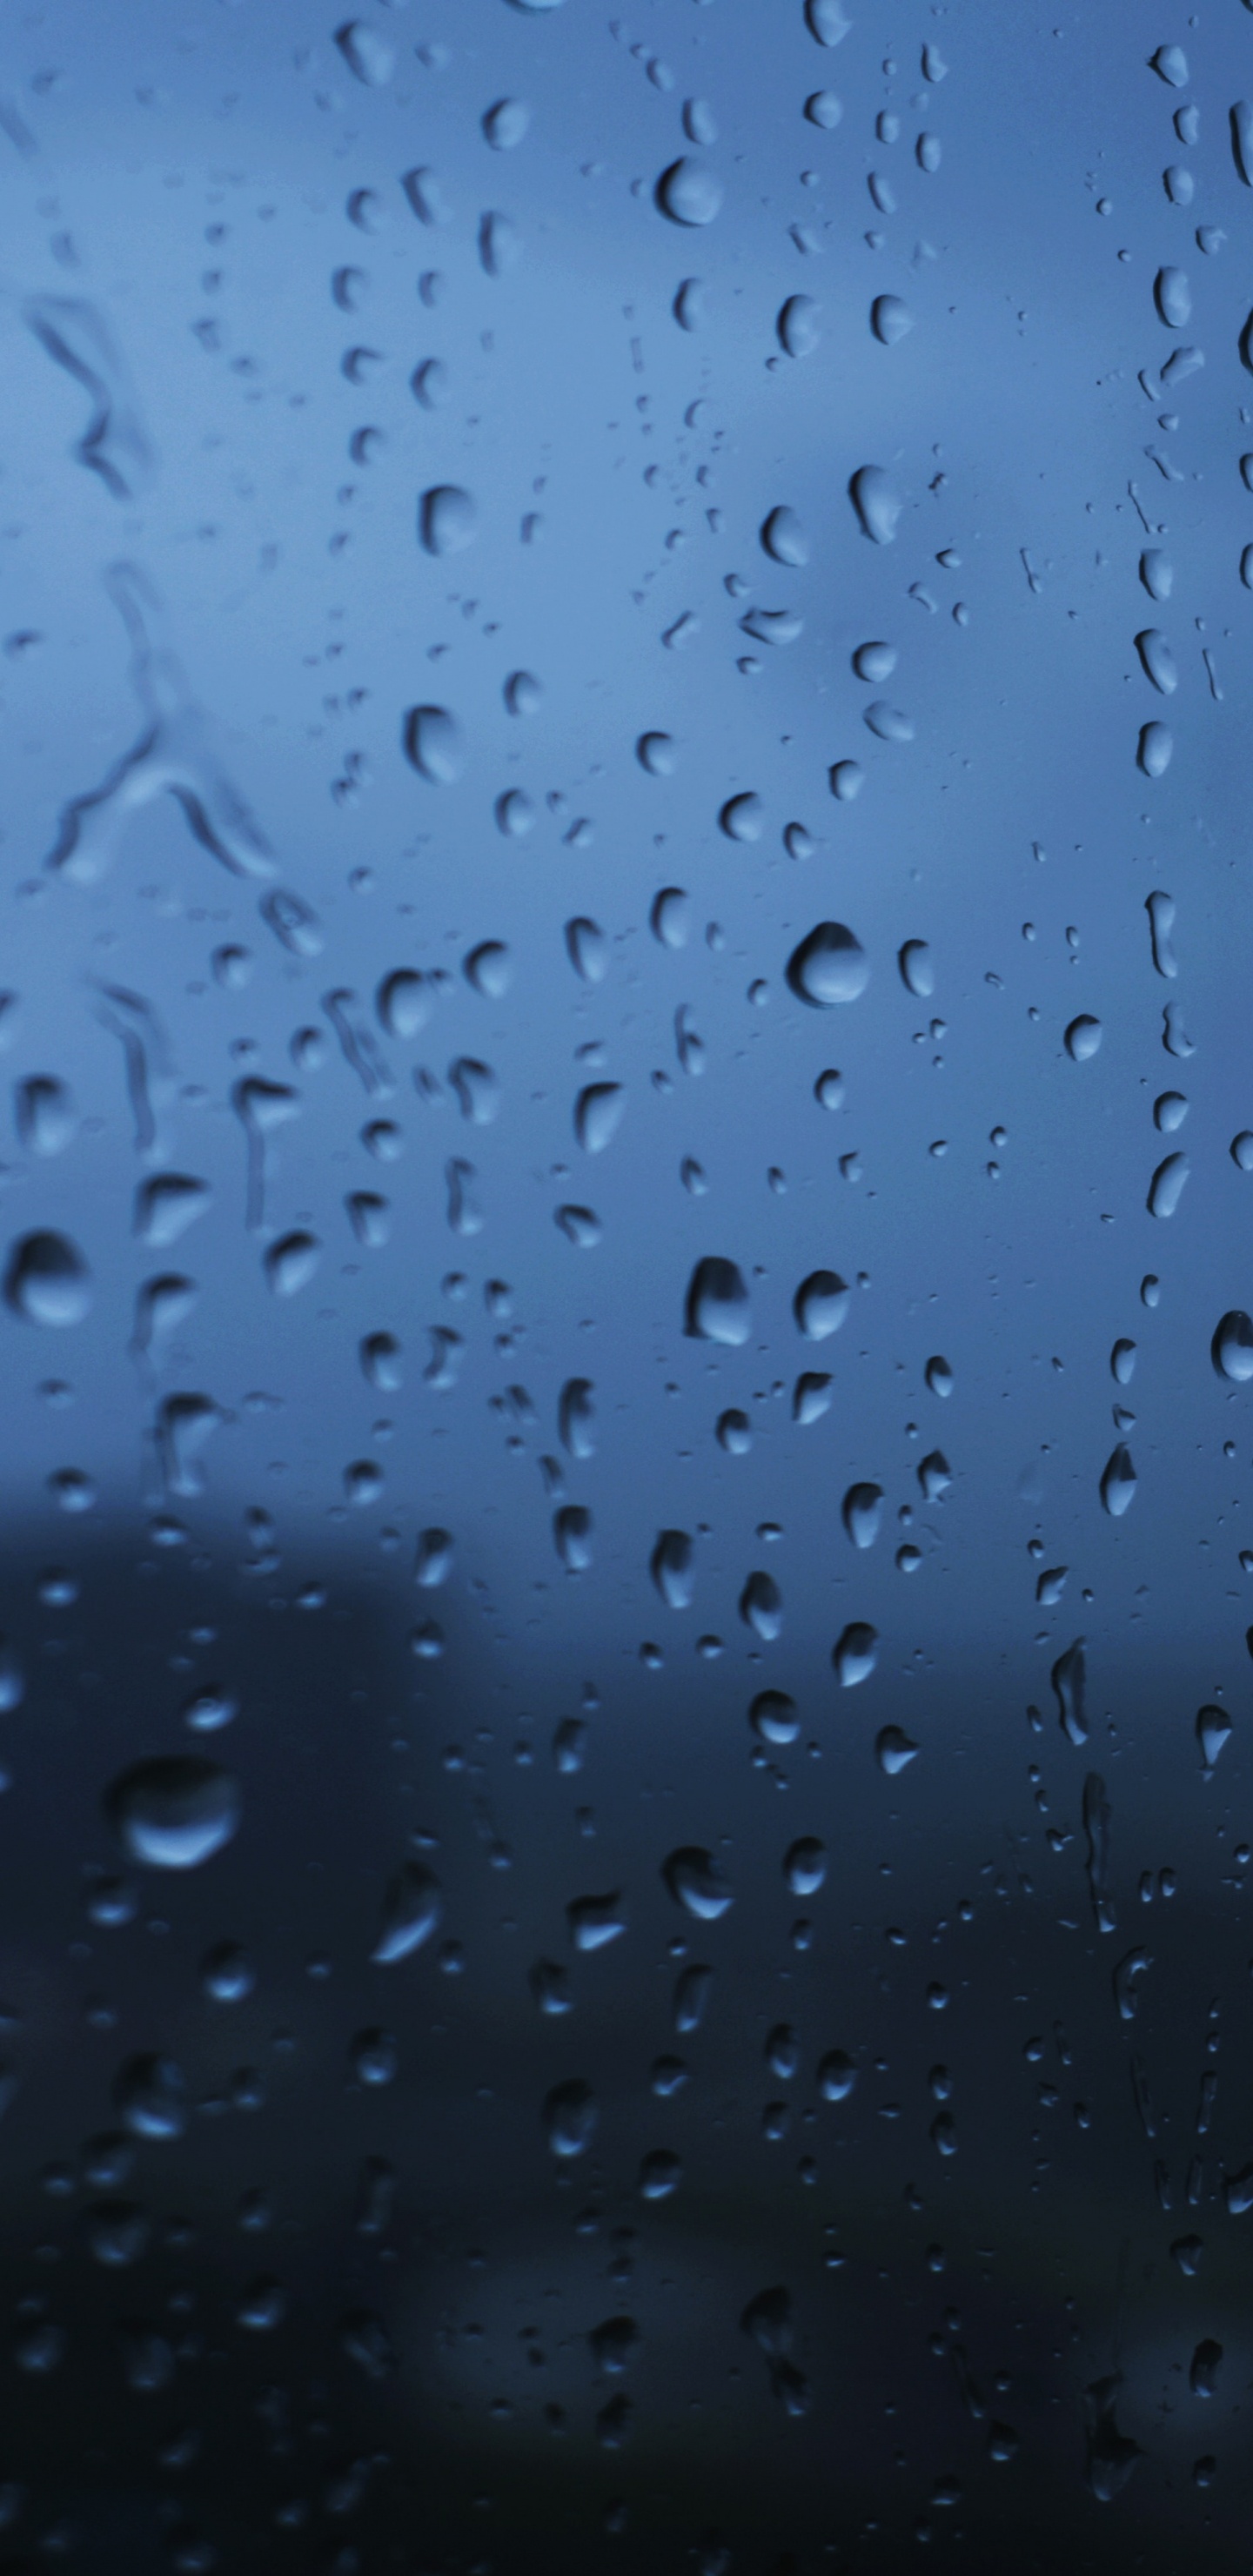 Tropfen, Regen, Blau, Wasser, Nieselregen. Wallpaper in 1440x2960 Resolution